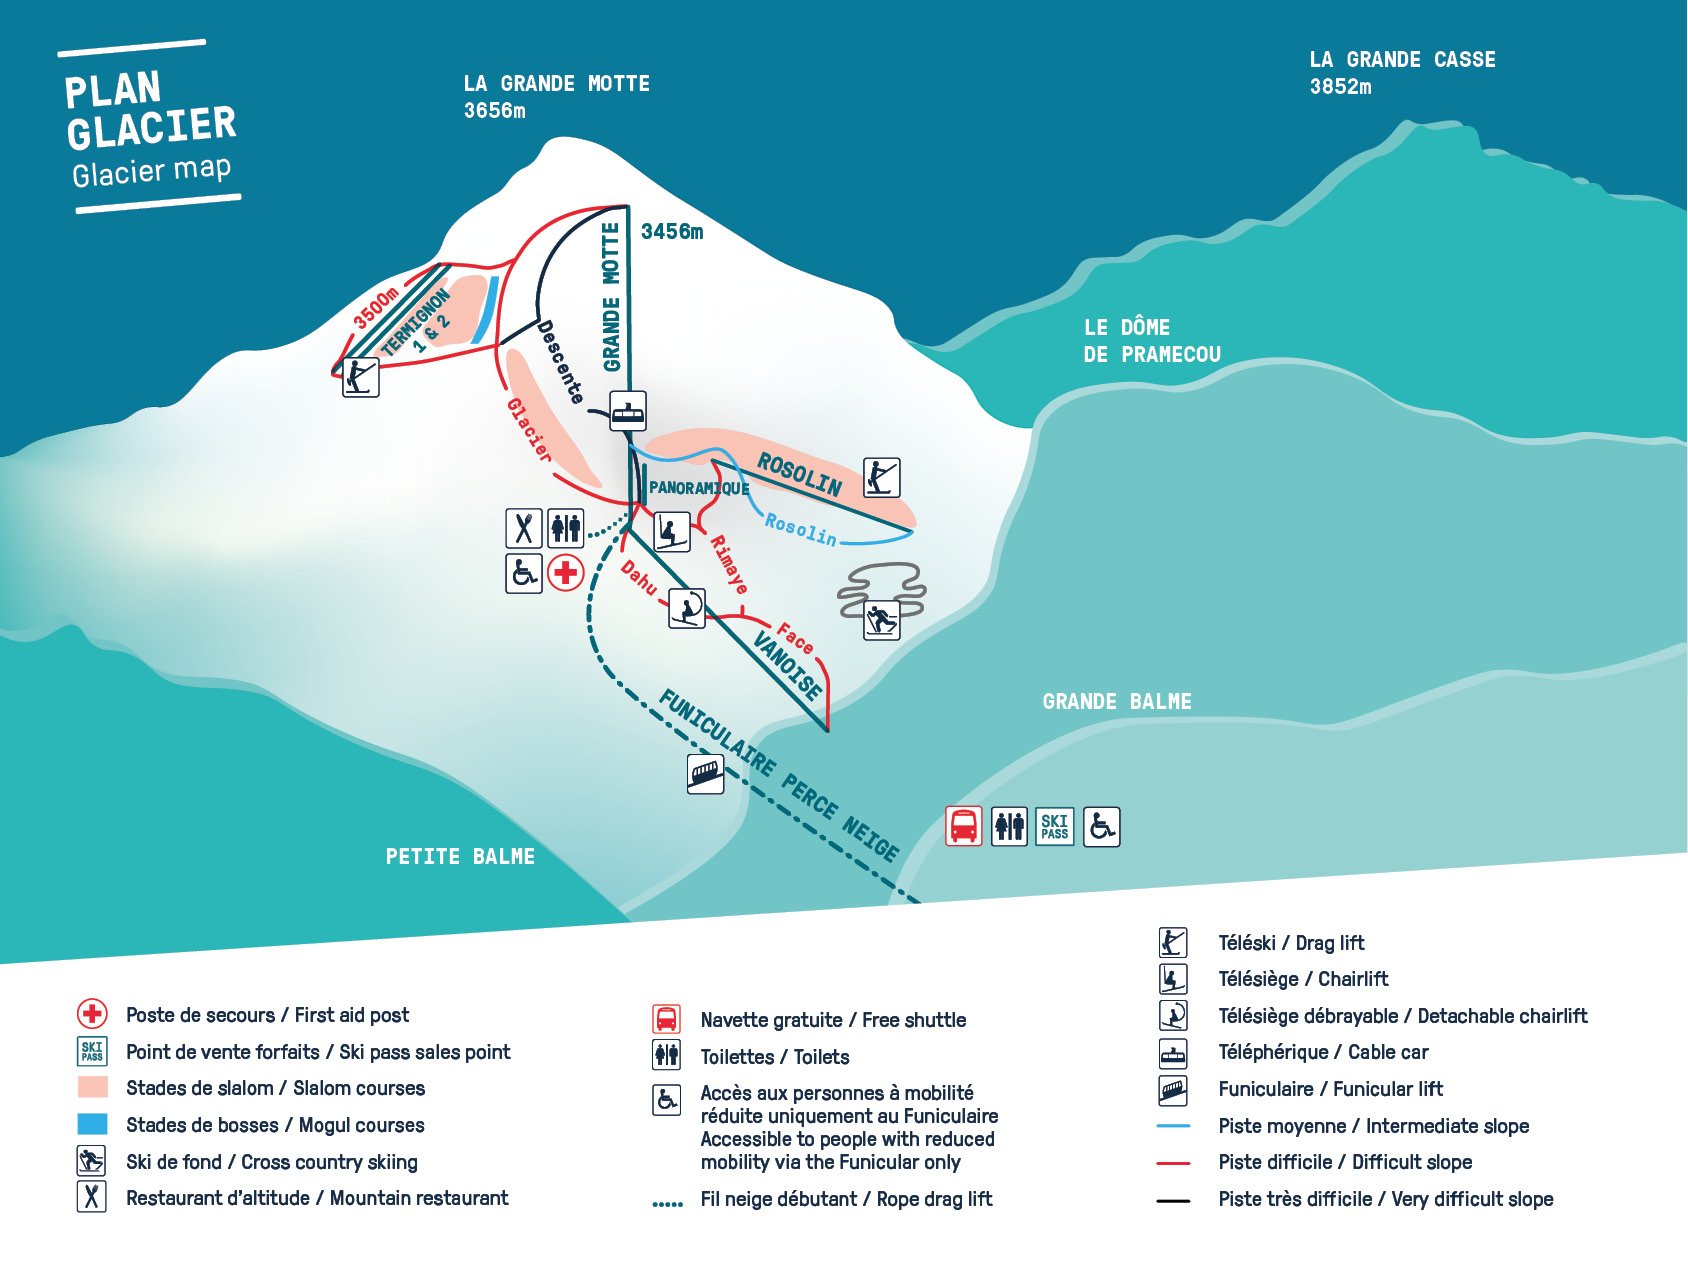 Plan du Glacier de la Grande Motte de Tignes